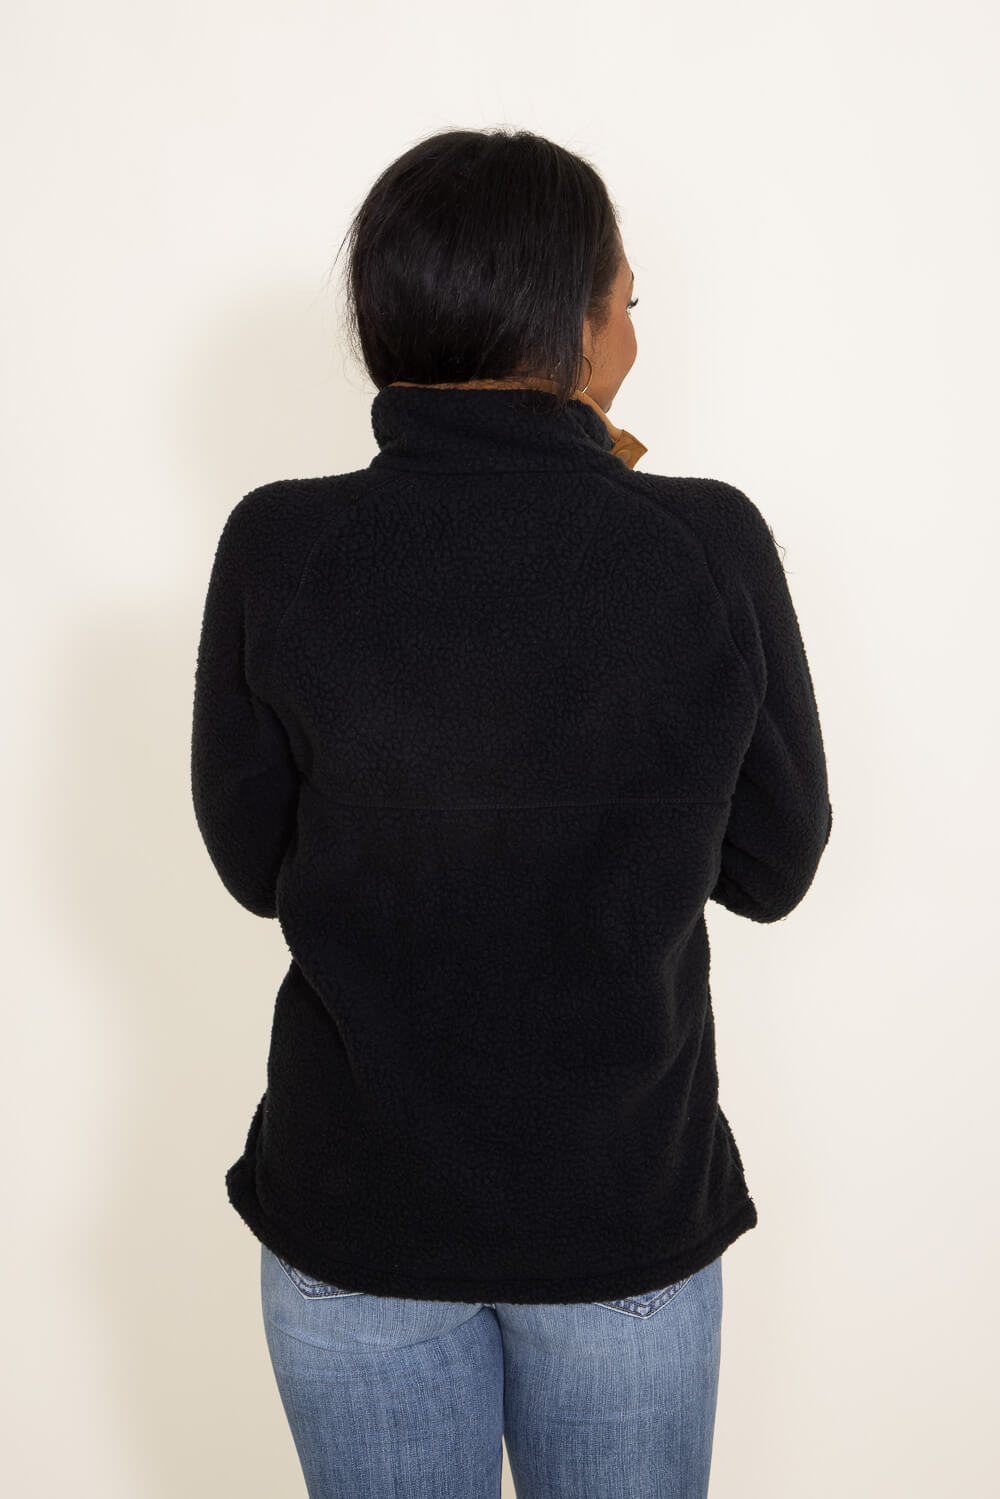 Carhartt® Ladies' 1/4 Snap Fleece Pullover - Fort Brands